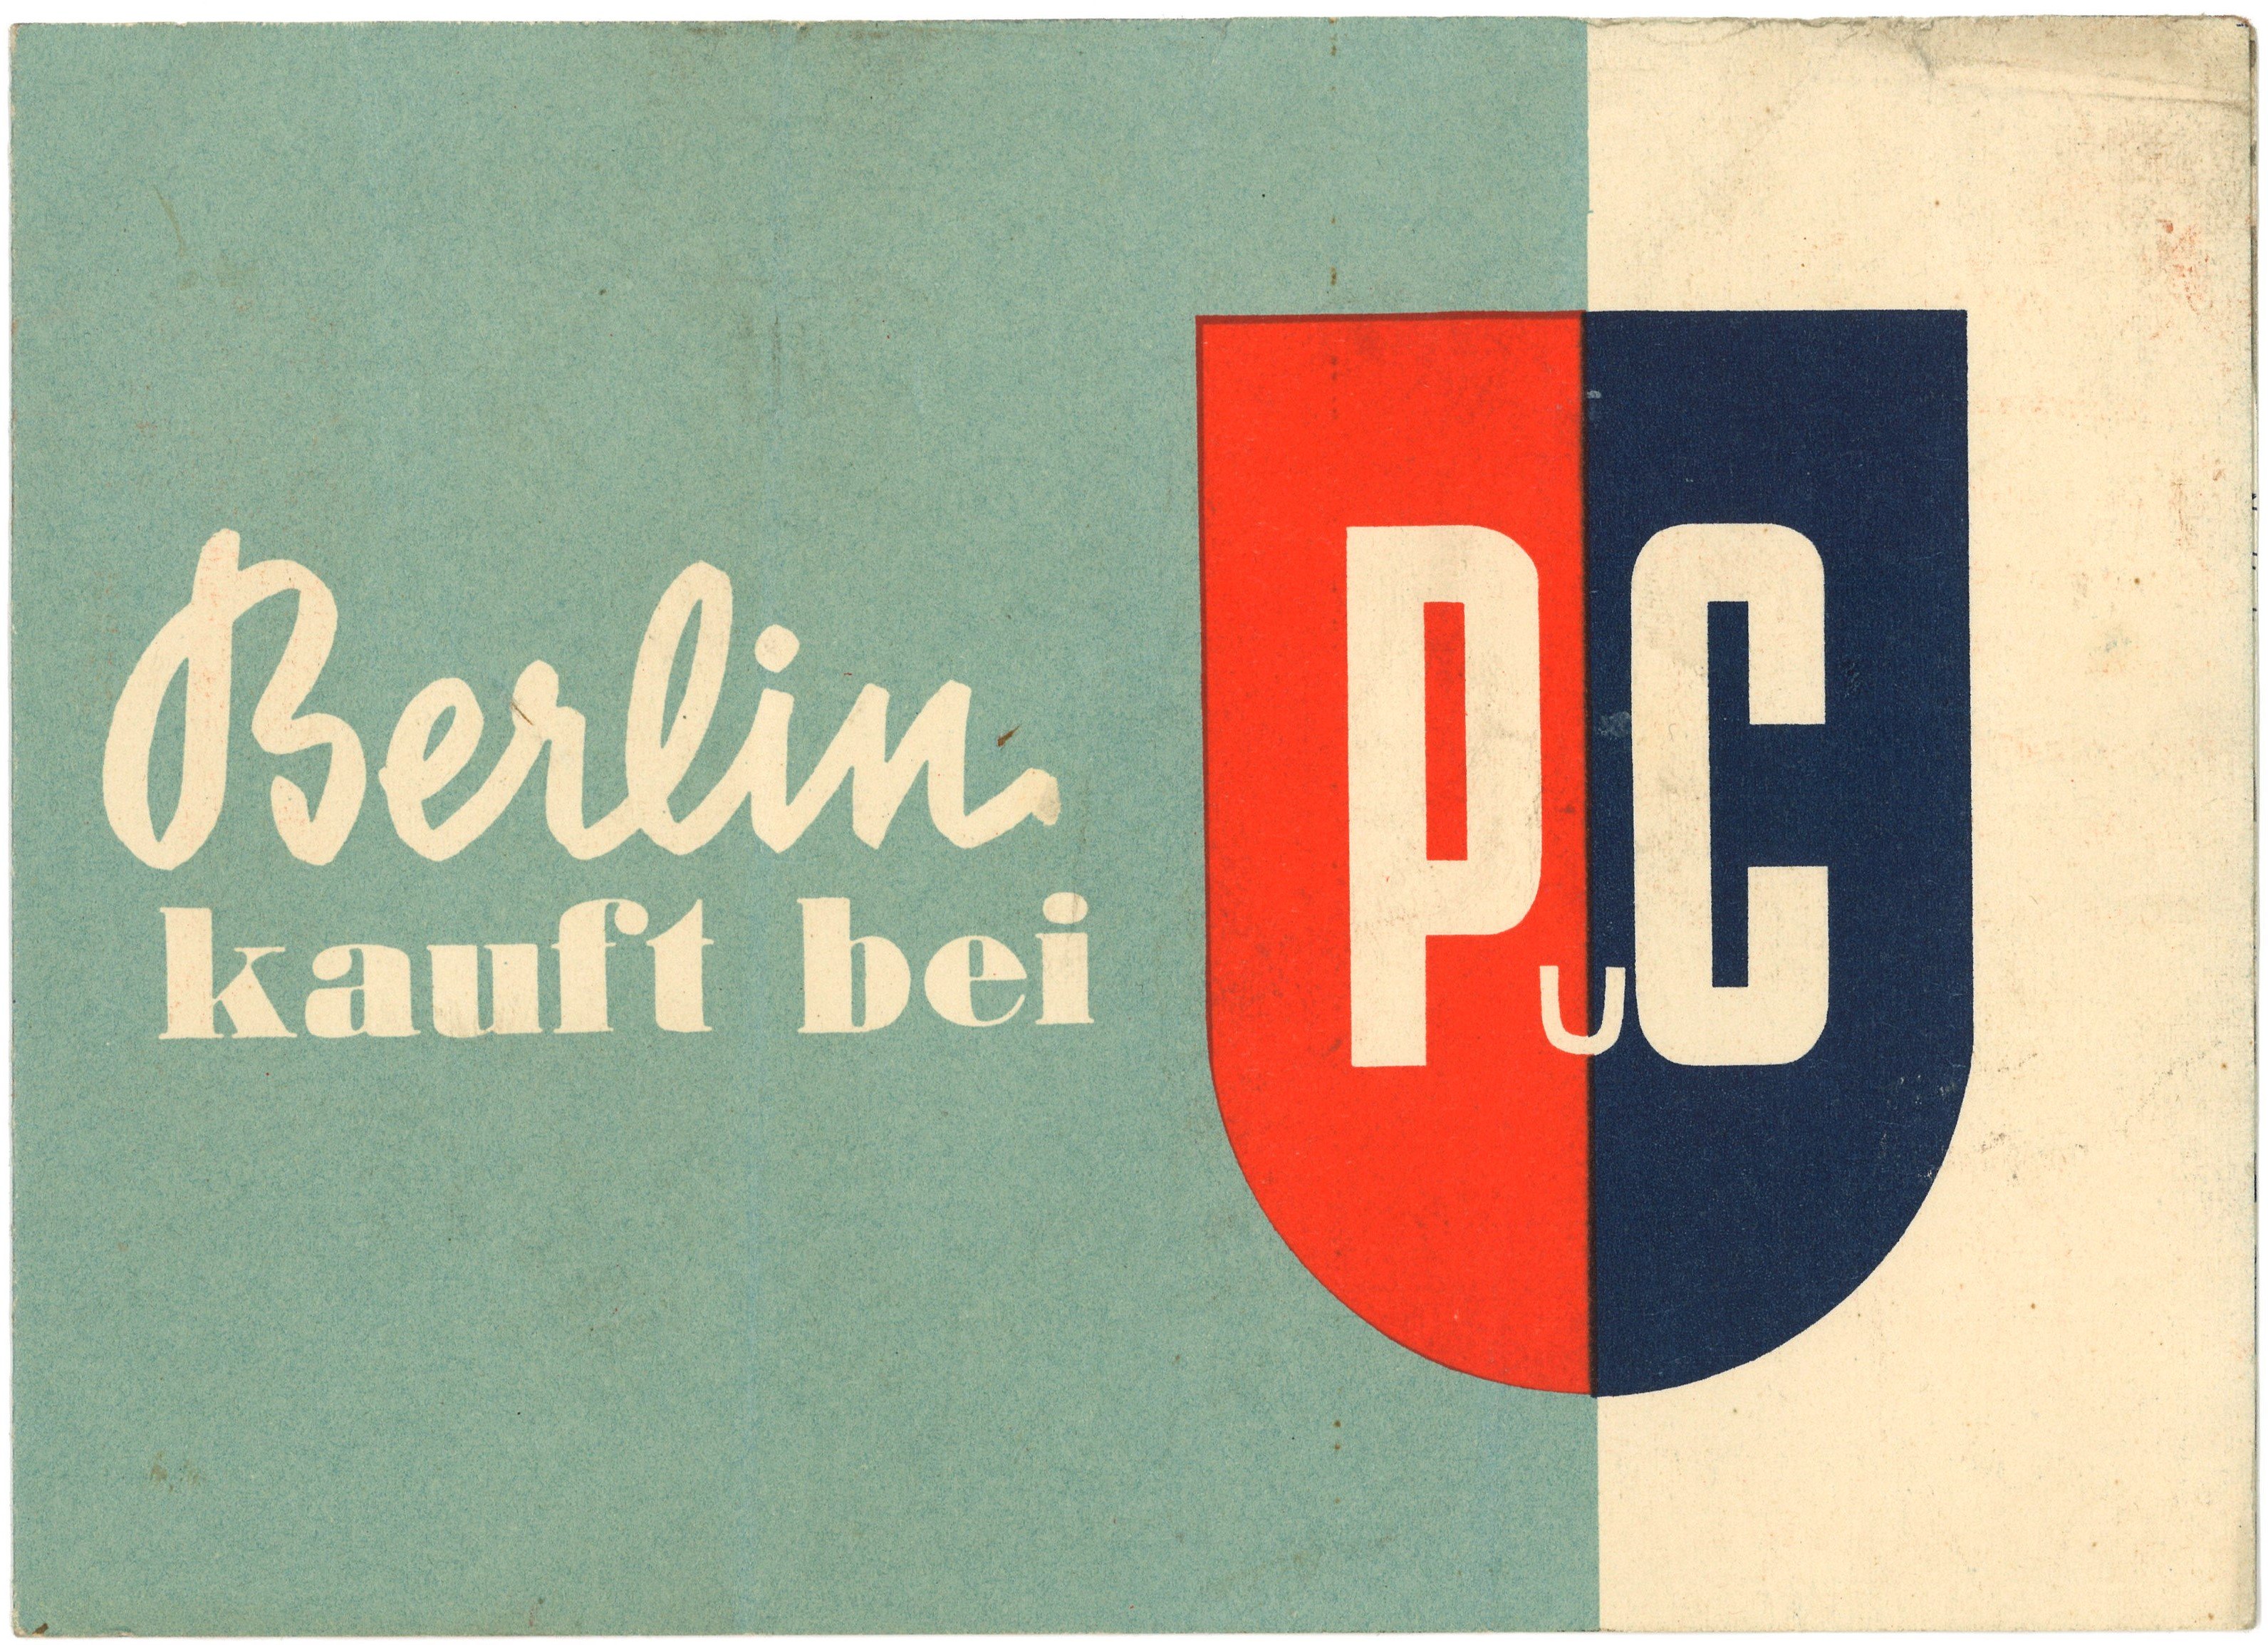 Werbeprospekt des Bekleidungshauses Peek & Cloppenburfg in Berlin-Mitte (Landesgeschichtliche Vereinigung für die Mark Brandenburg e.V., Archiv CC BY)